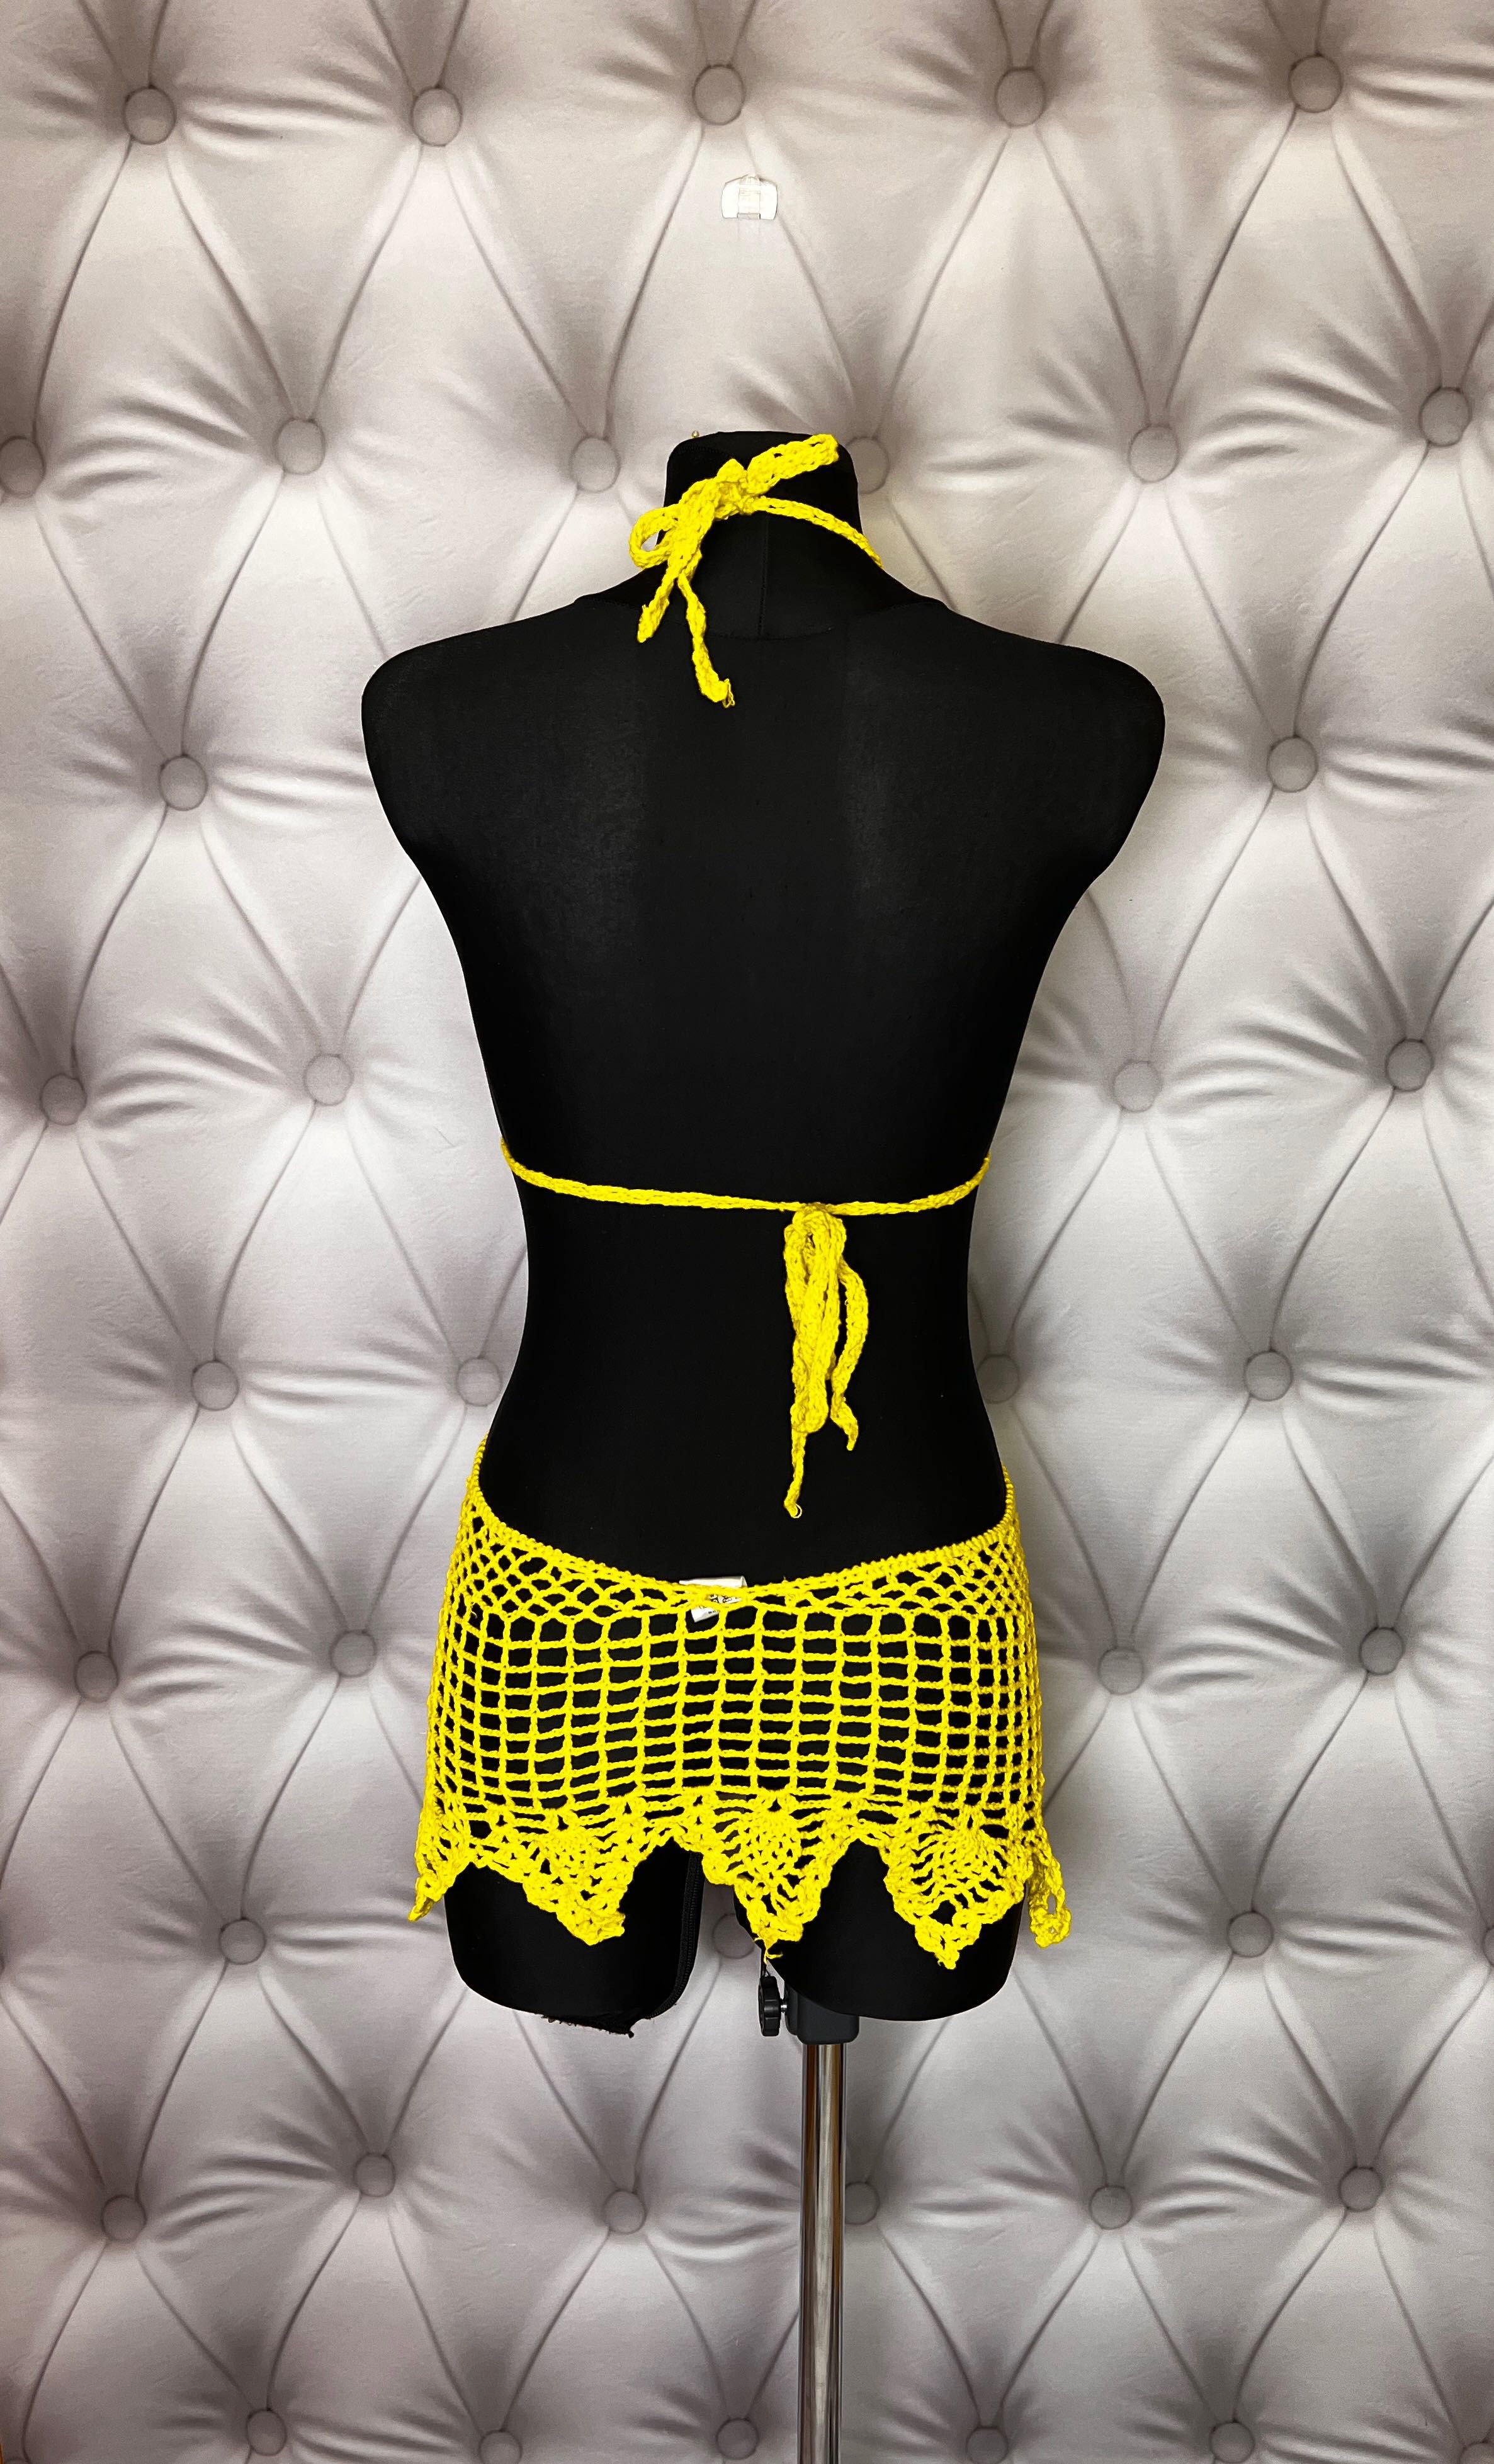 Narzutka tunika sukienka Crochet szydełko na plaże żółta